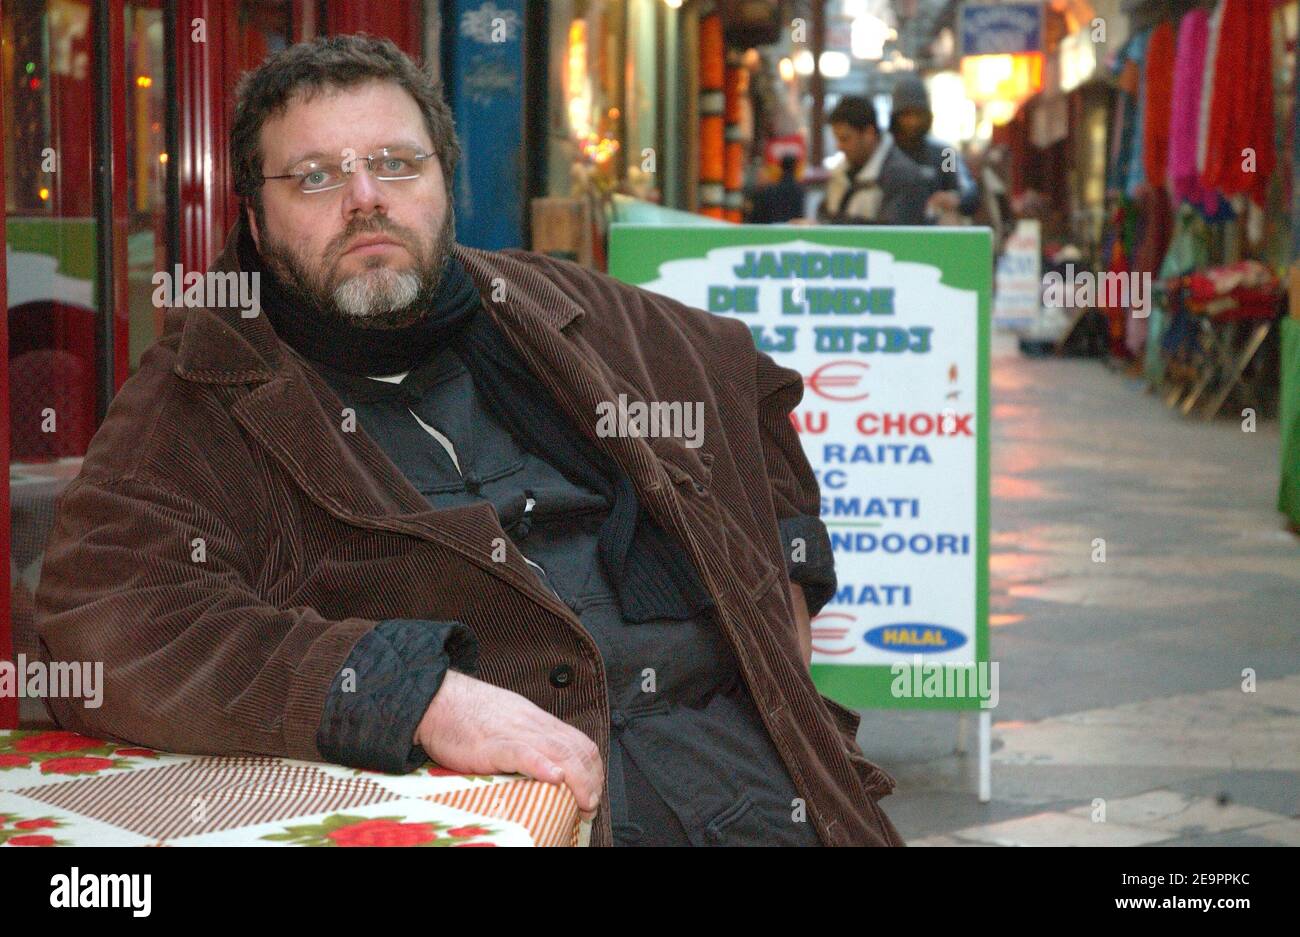 Jean-Jacques Jauffret, 41 ans, est photographié autour du passage Brady, un  quartier indien à Paris, en France, le 20 décembre 2006. En 2005, Jean-Jacques  Jauffret a dû payer des frais de 500